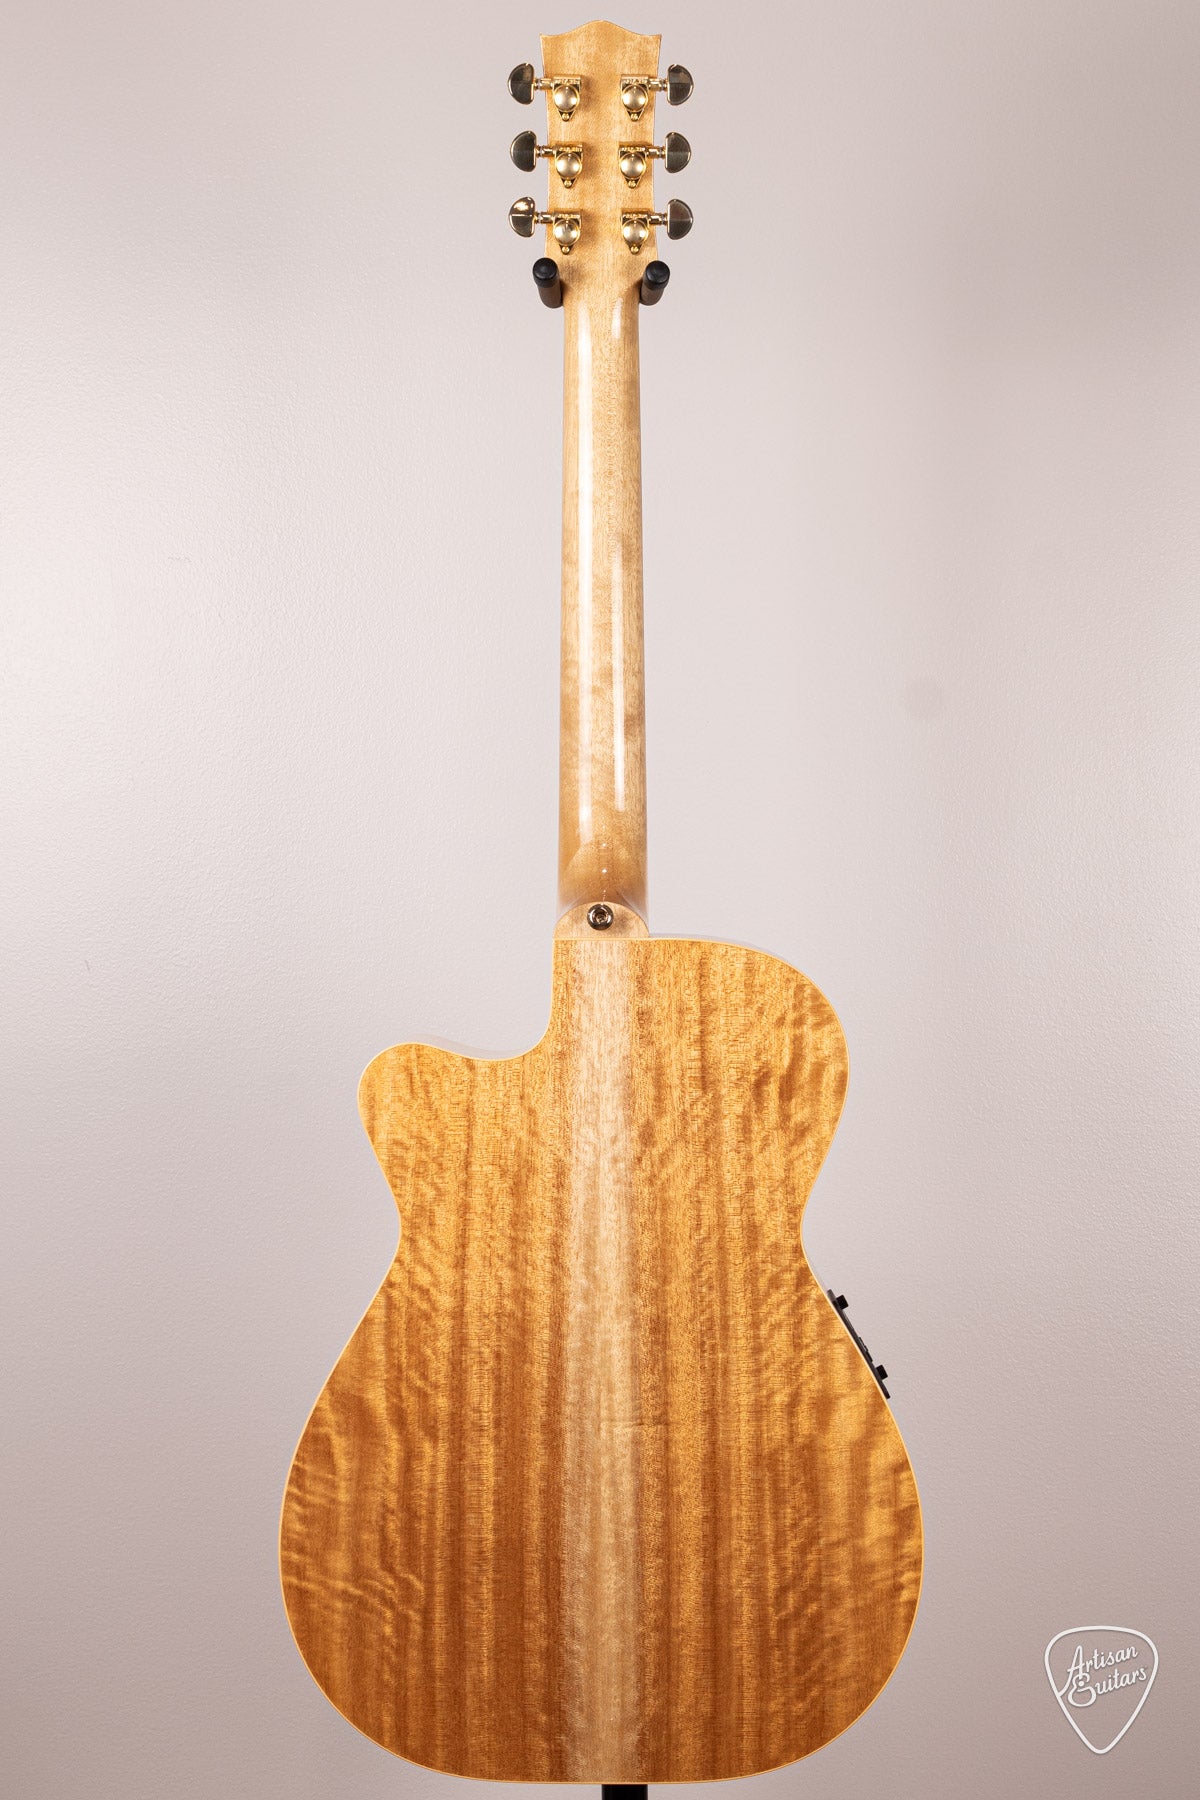 Maton Guitars Pre-Owned EBG-808C Performer - 16707